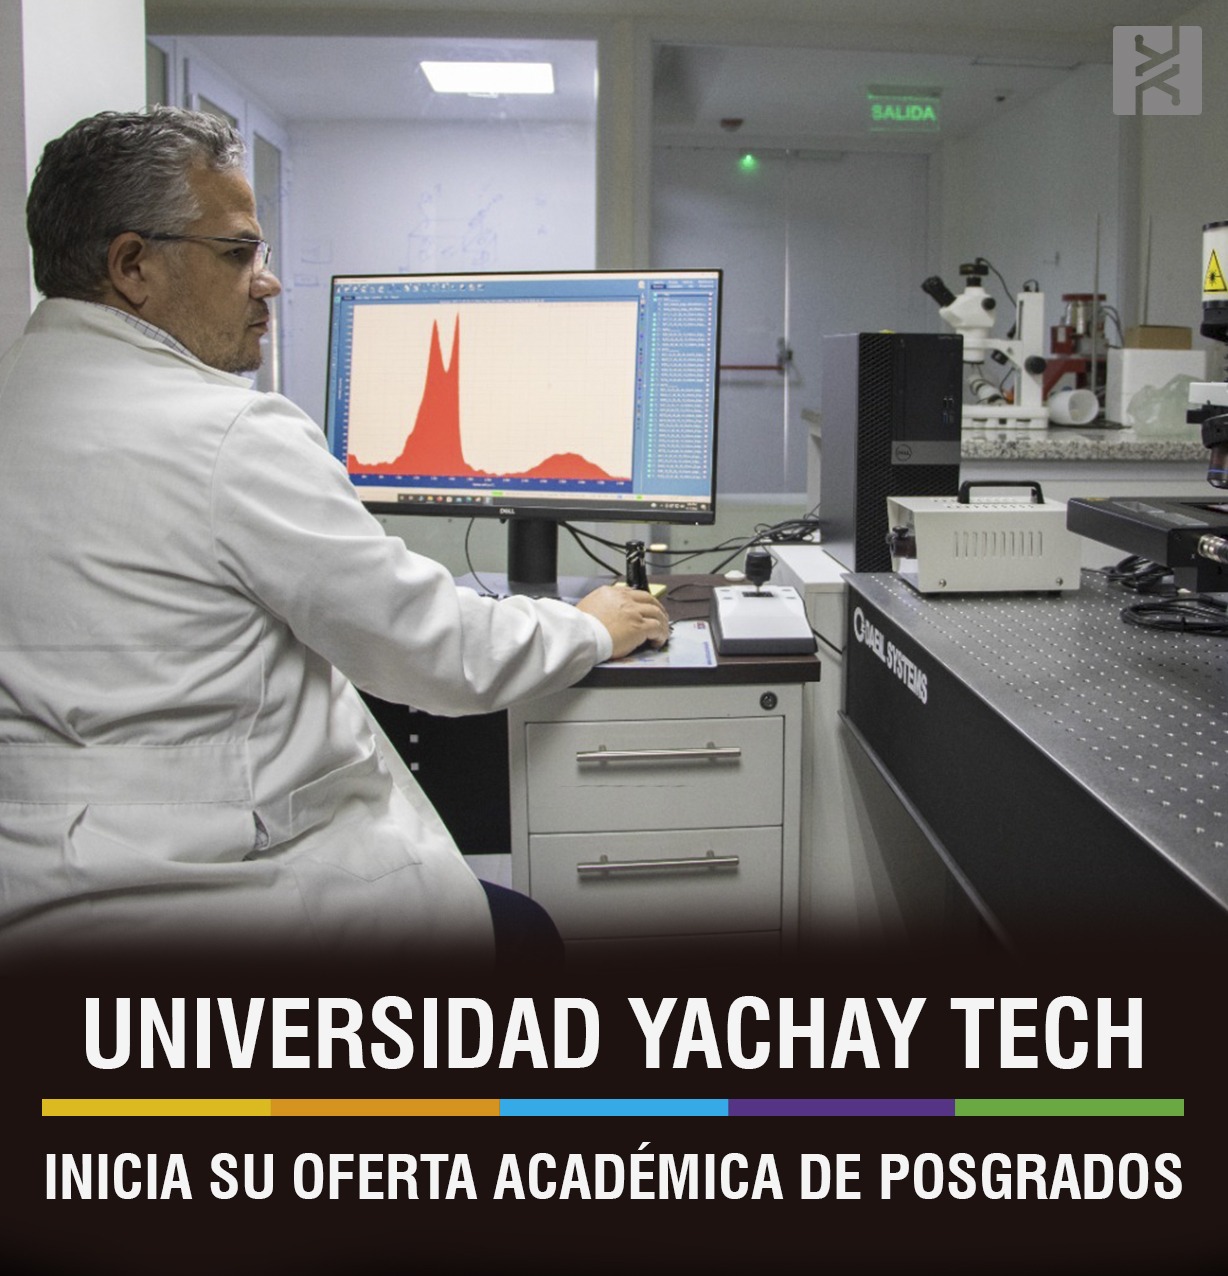 UNIVERSIDAD YACHAY TECH, INICIA SU OFERTA ACADÉMICA DE POSGRADOS